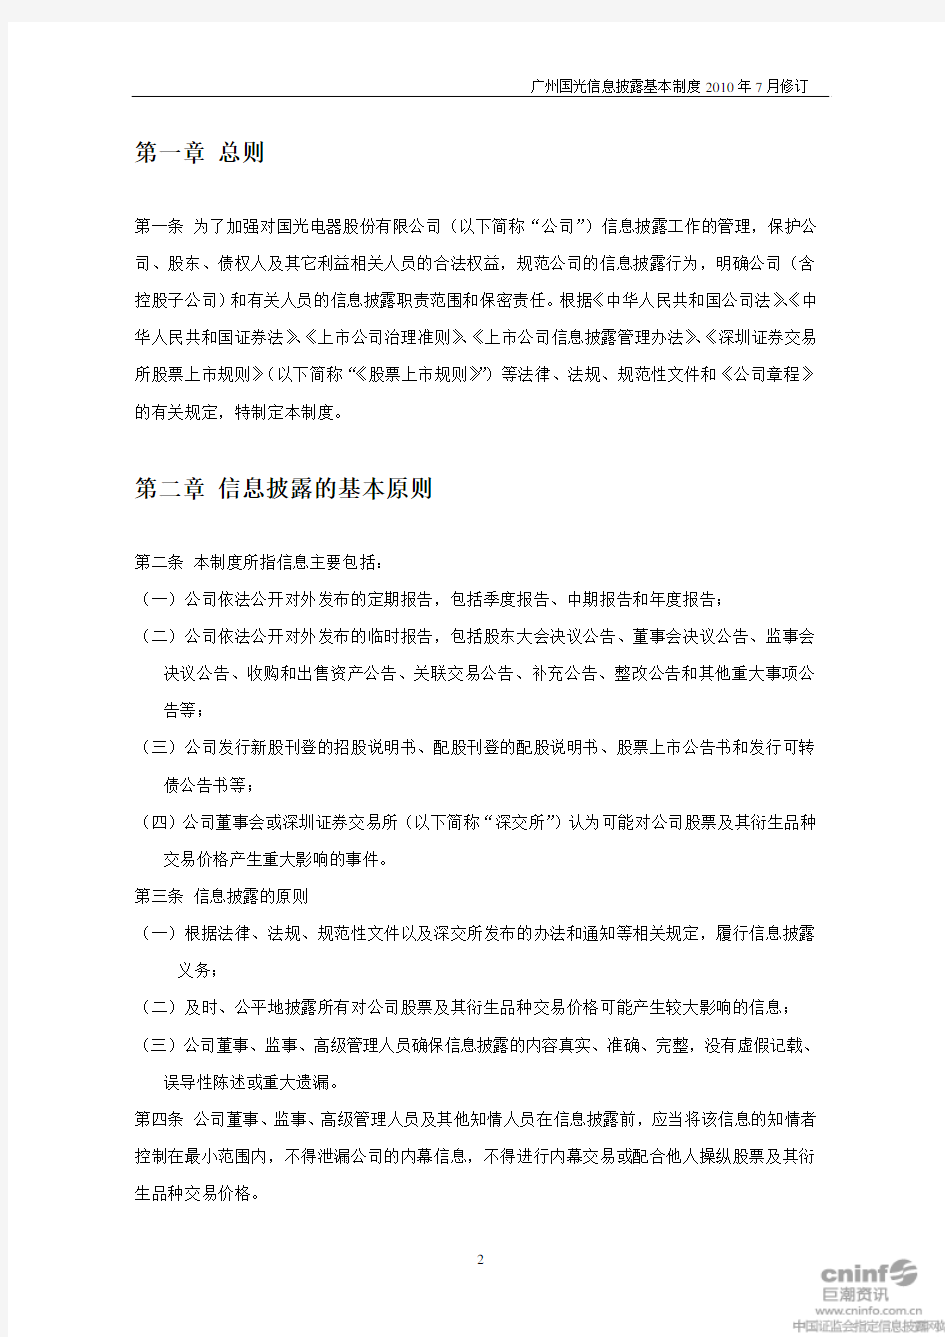 广州国光：信息披露基本制度(2010年7月) 2010-07-24